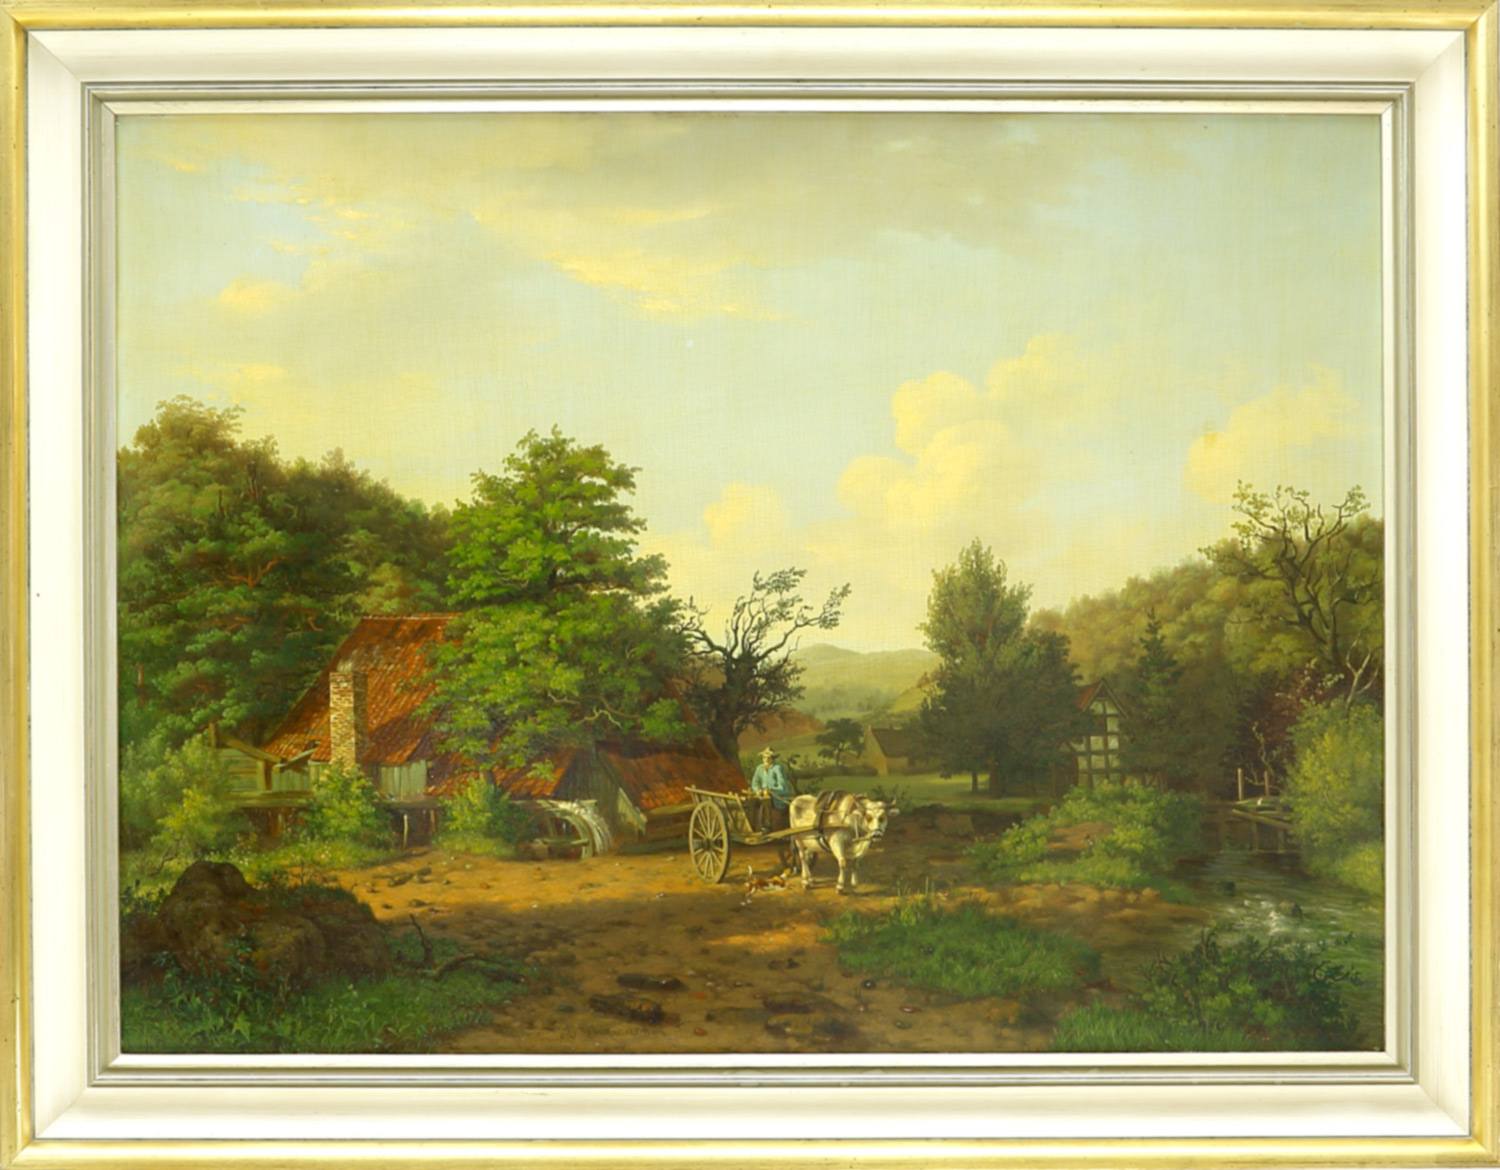 Auktionshaus Quentin Berlin  Gemälde Wiemans  Andries  Sonnenbeschienene Landschaft mit Bauernhaus und Ochsenkarren